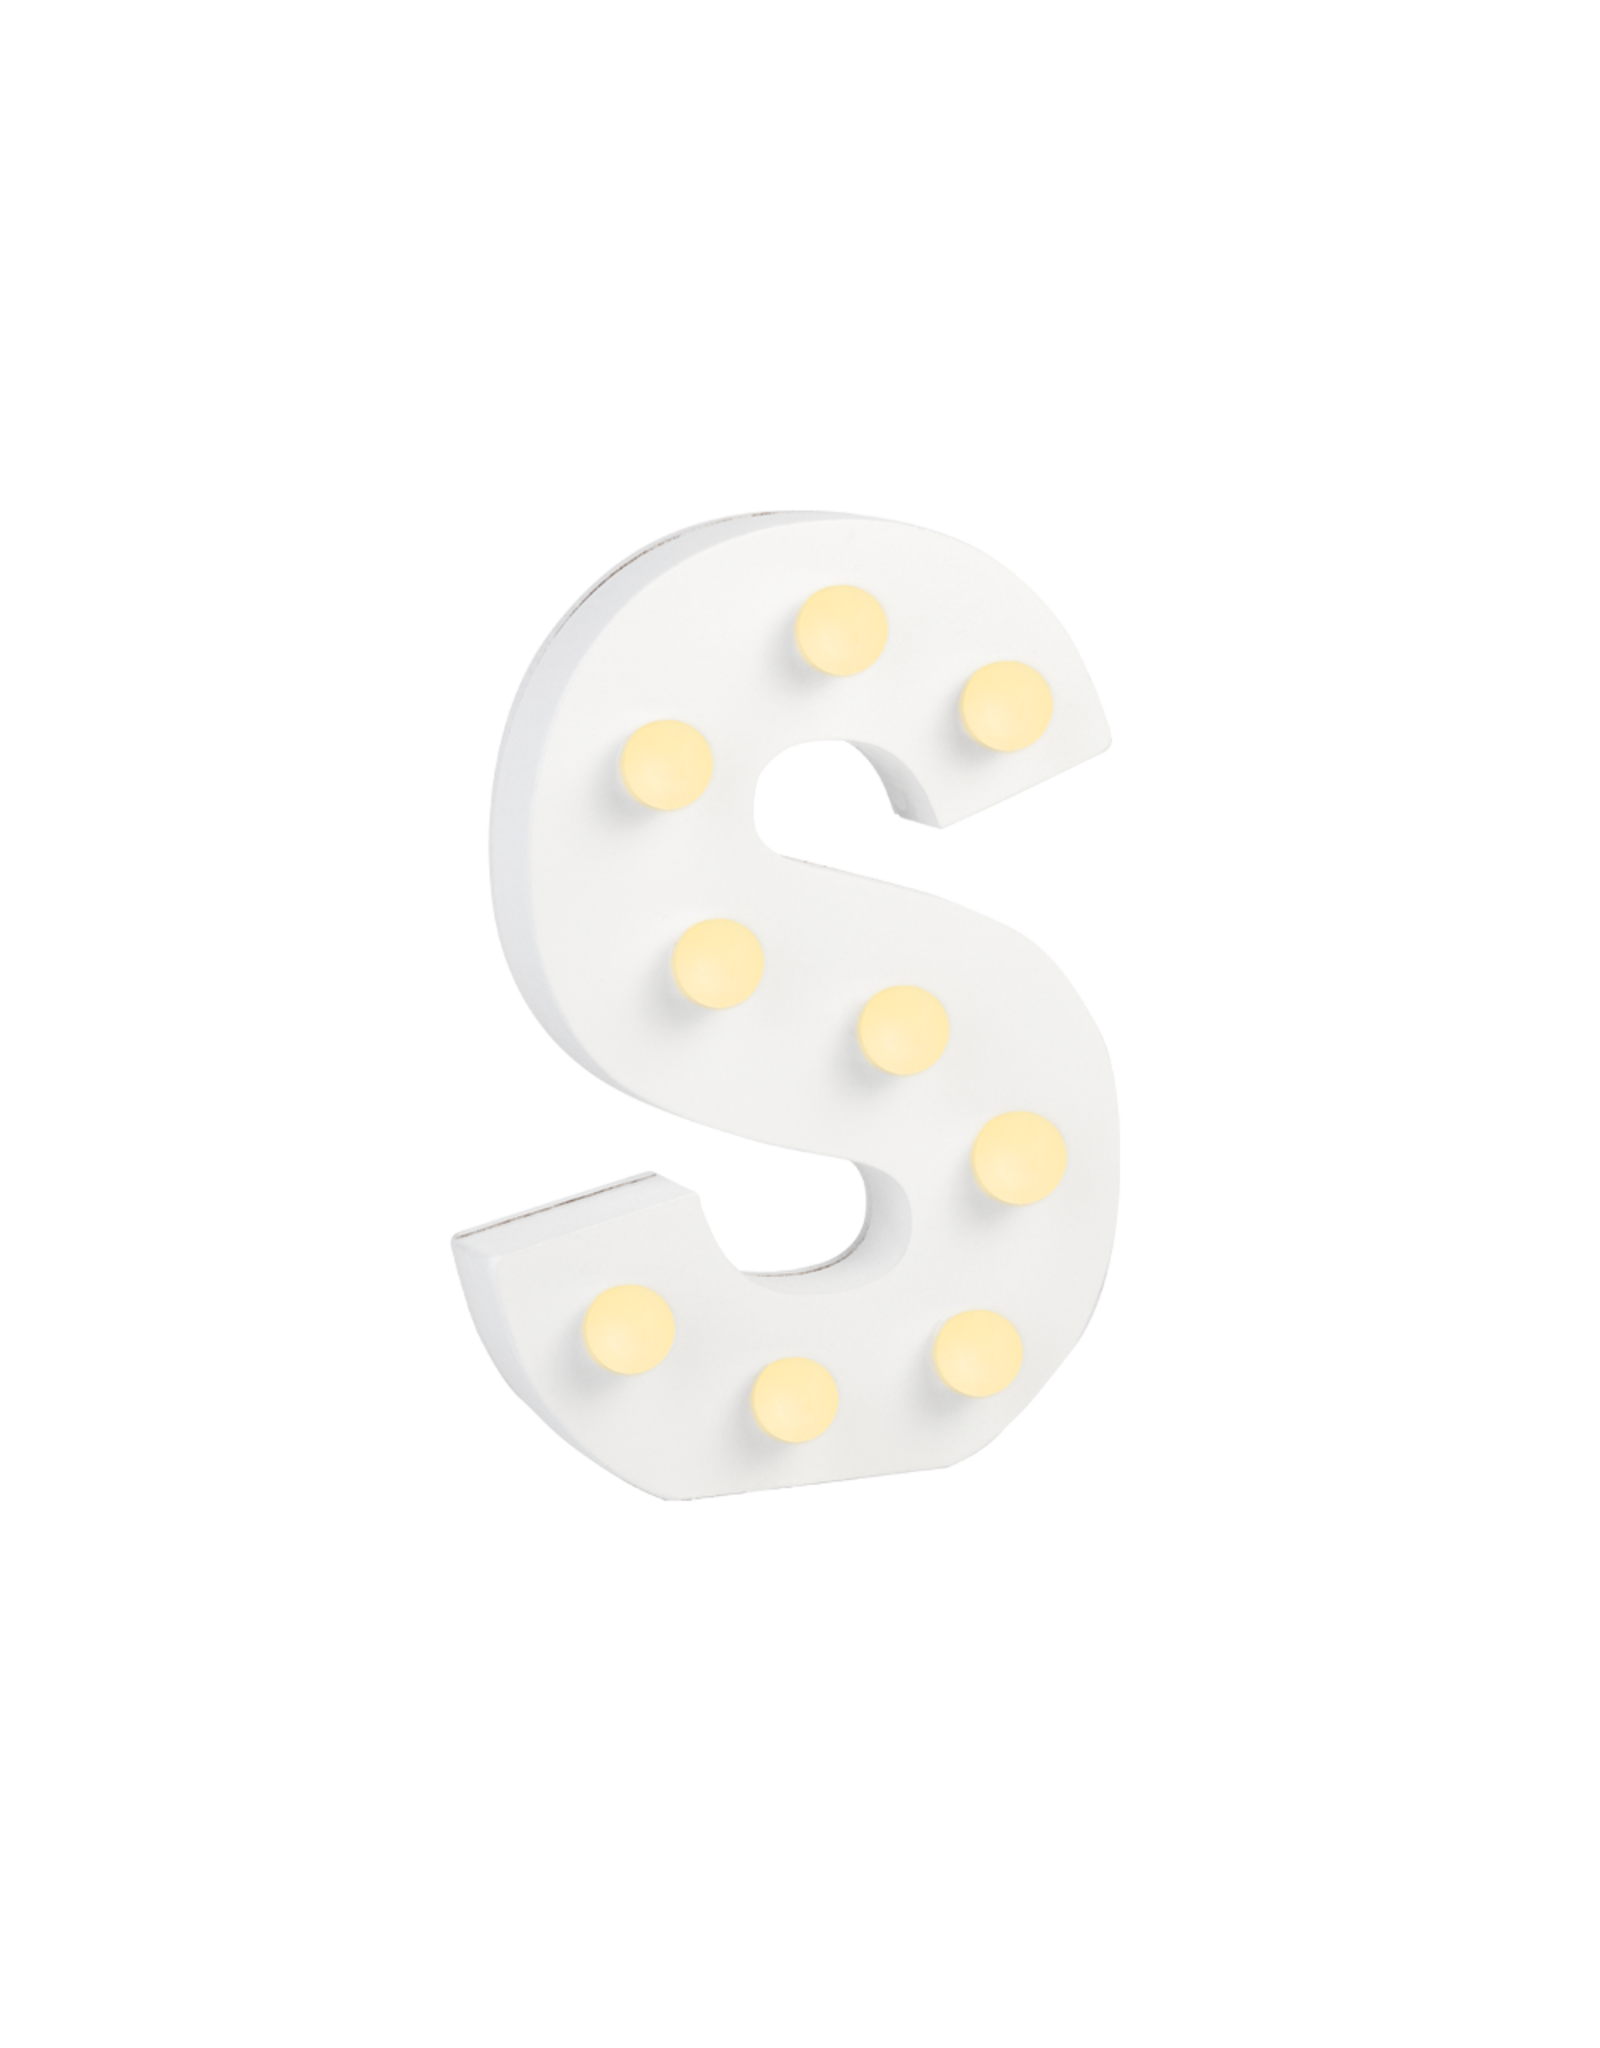 Light letter - S